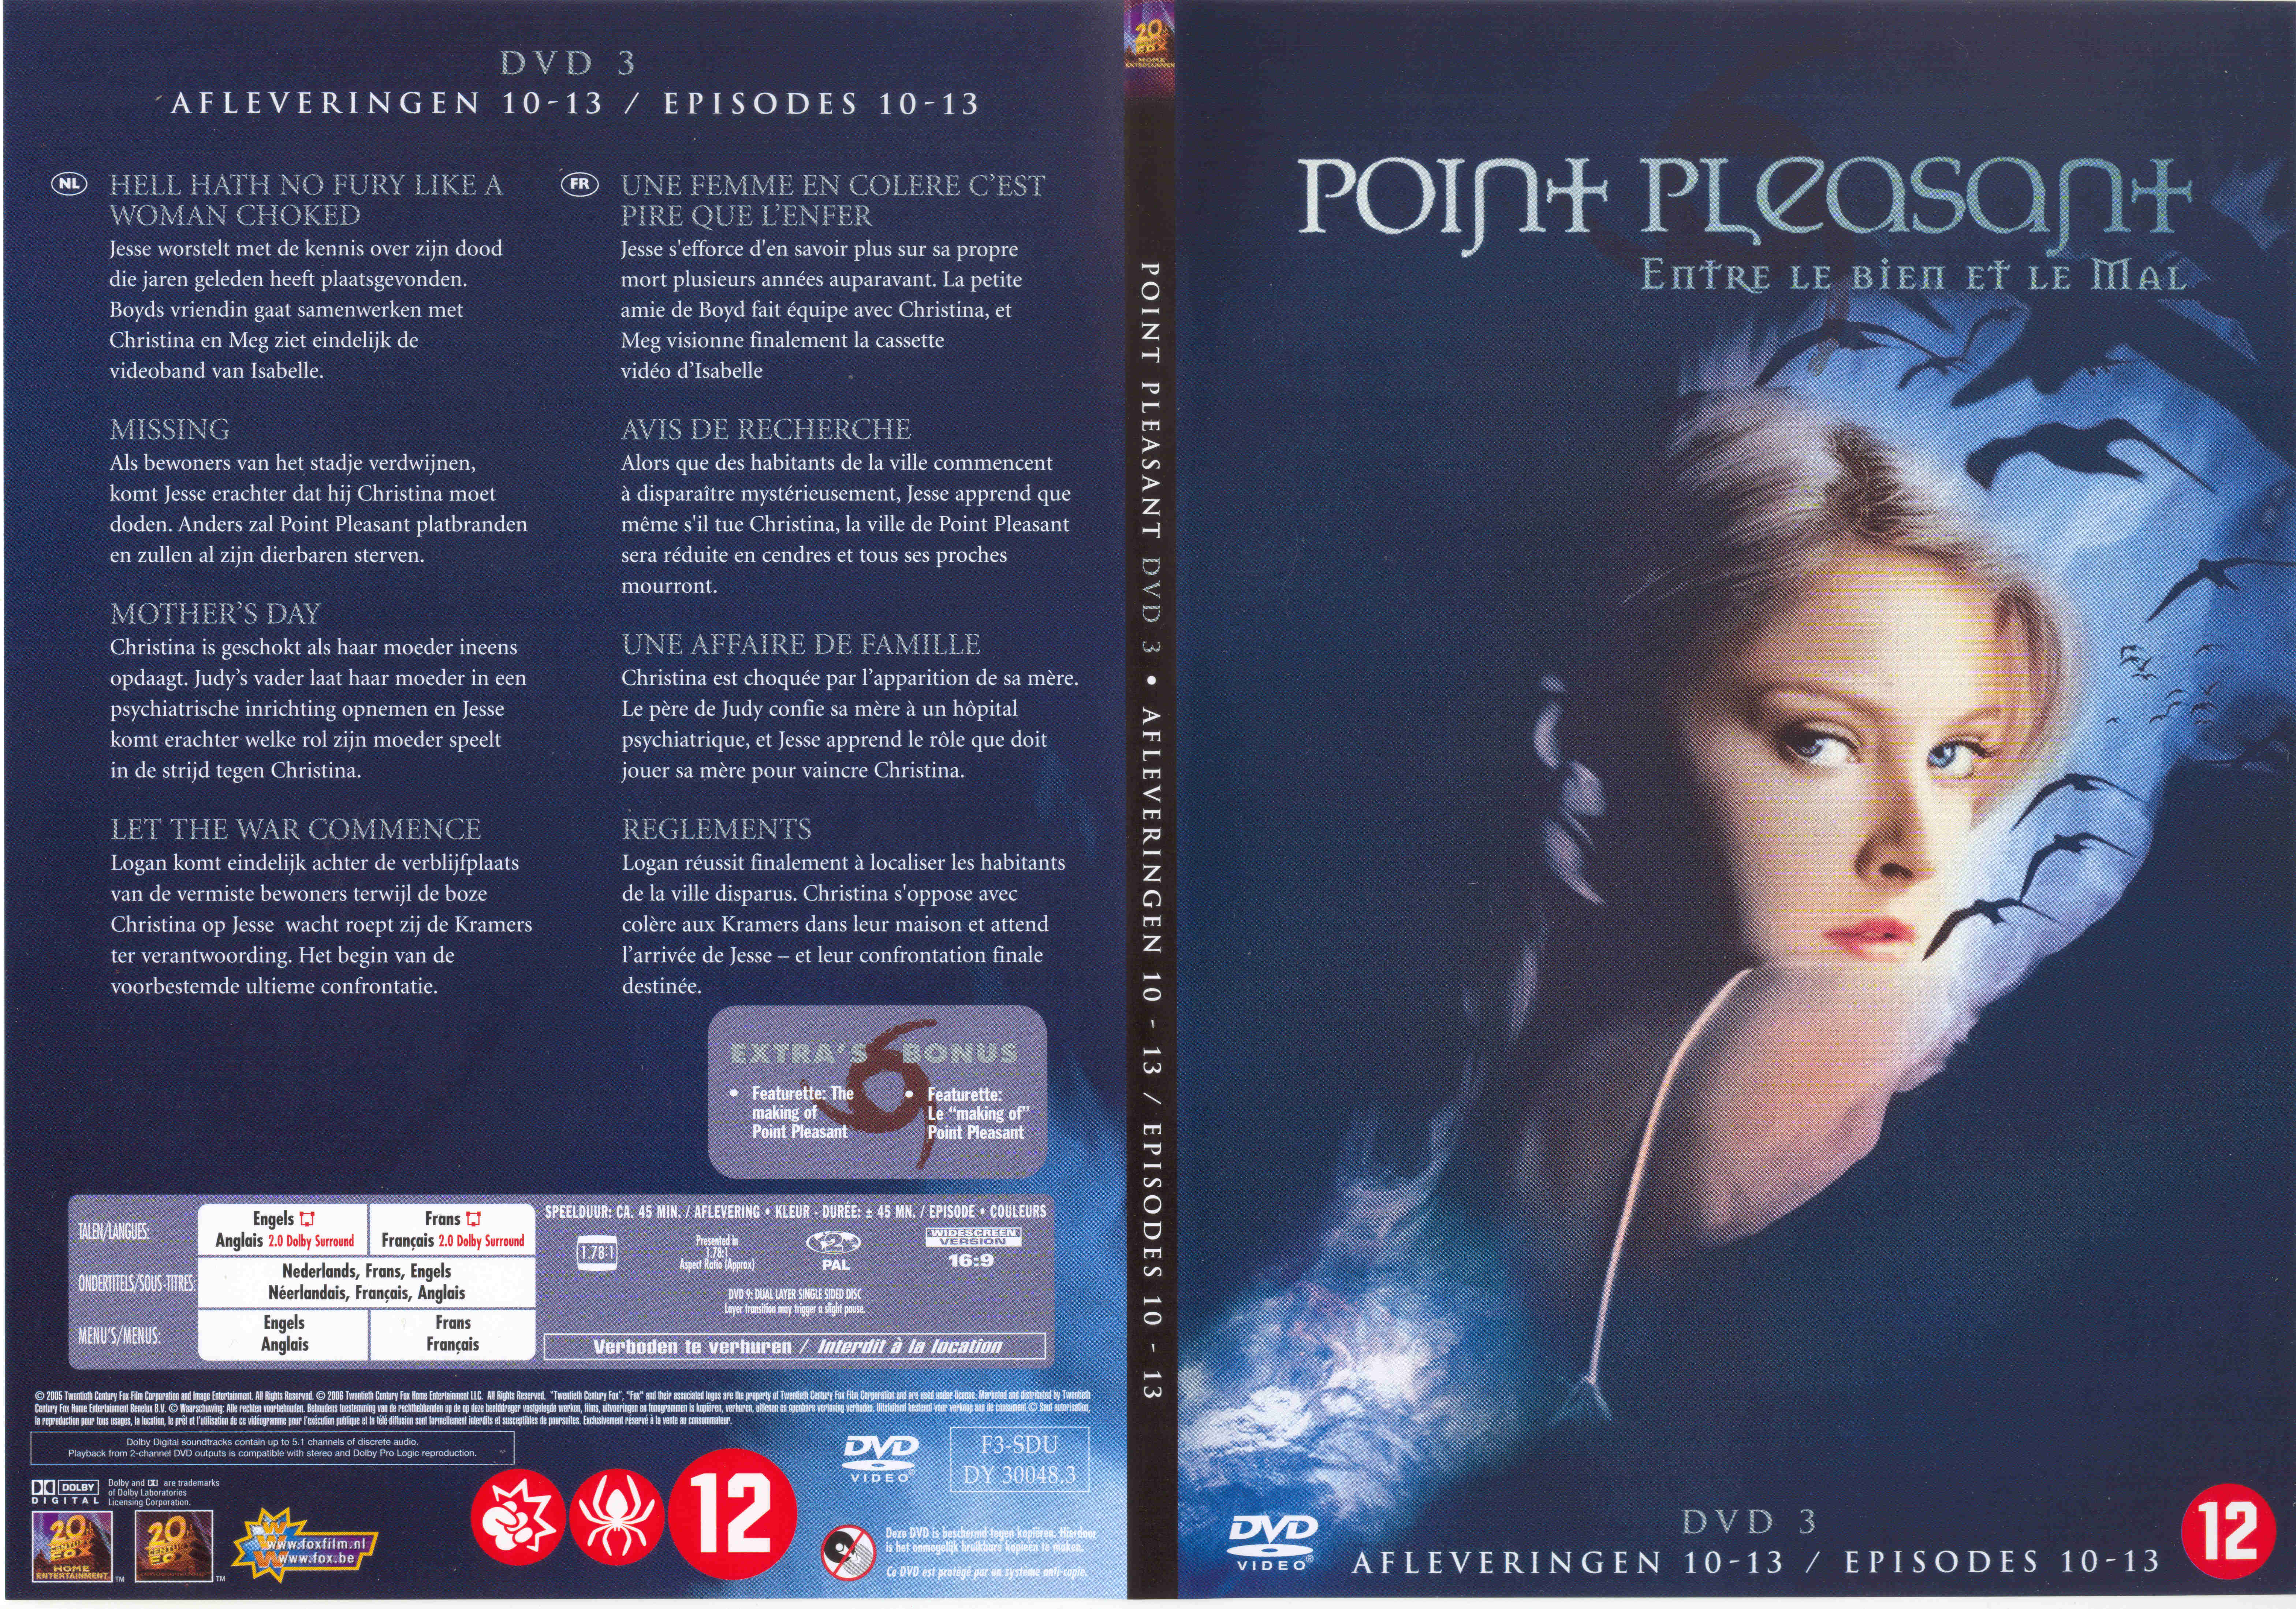 Jaquette DVD Point pleasant vol 3